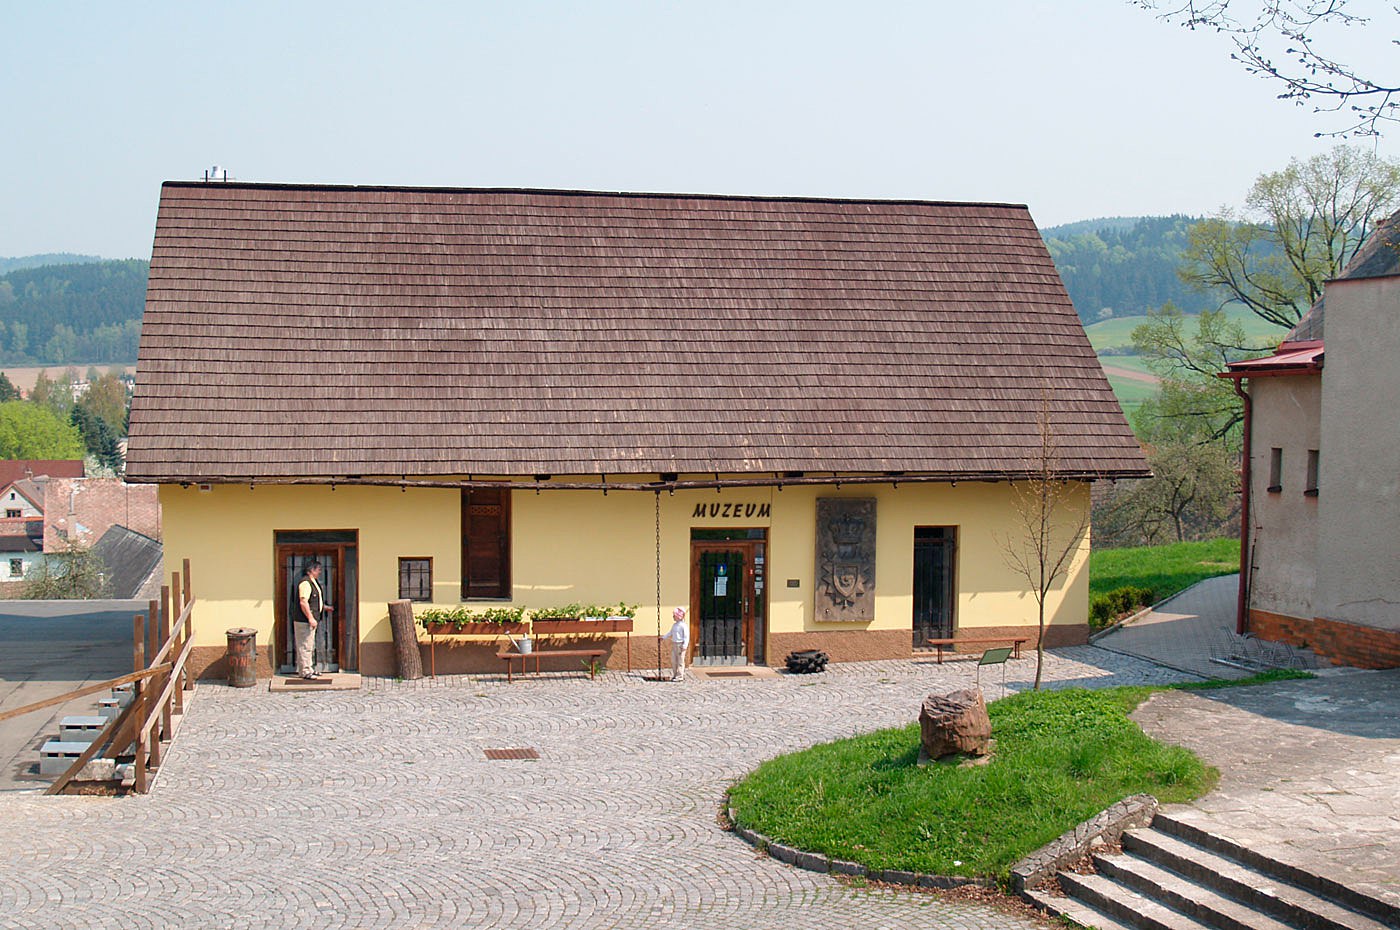 Městské muzeum ve Rtyni v Podkrkonoší